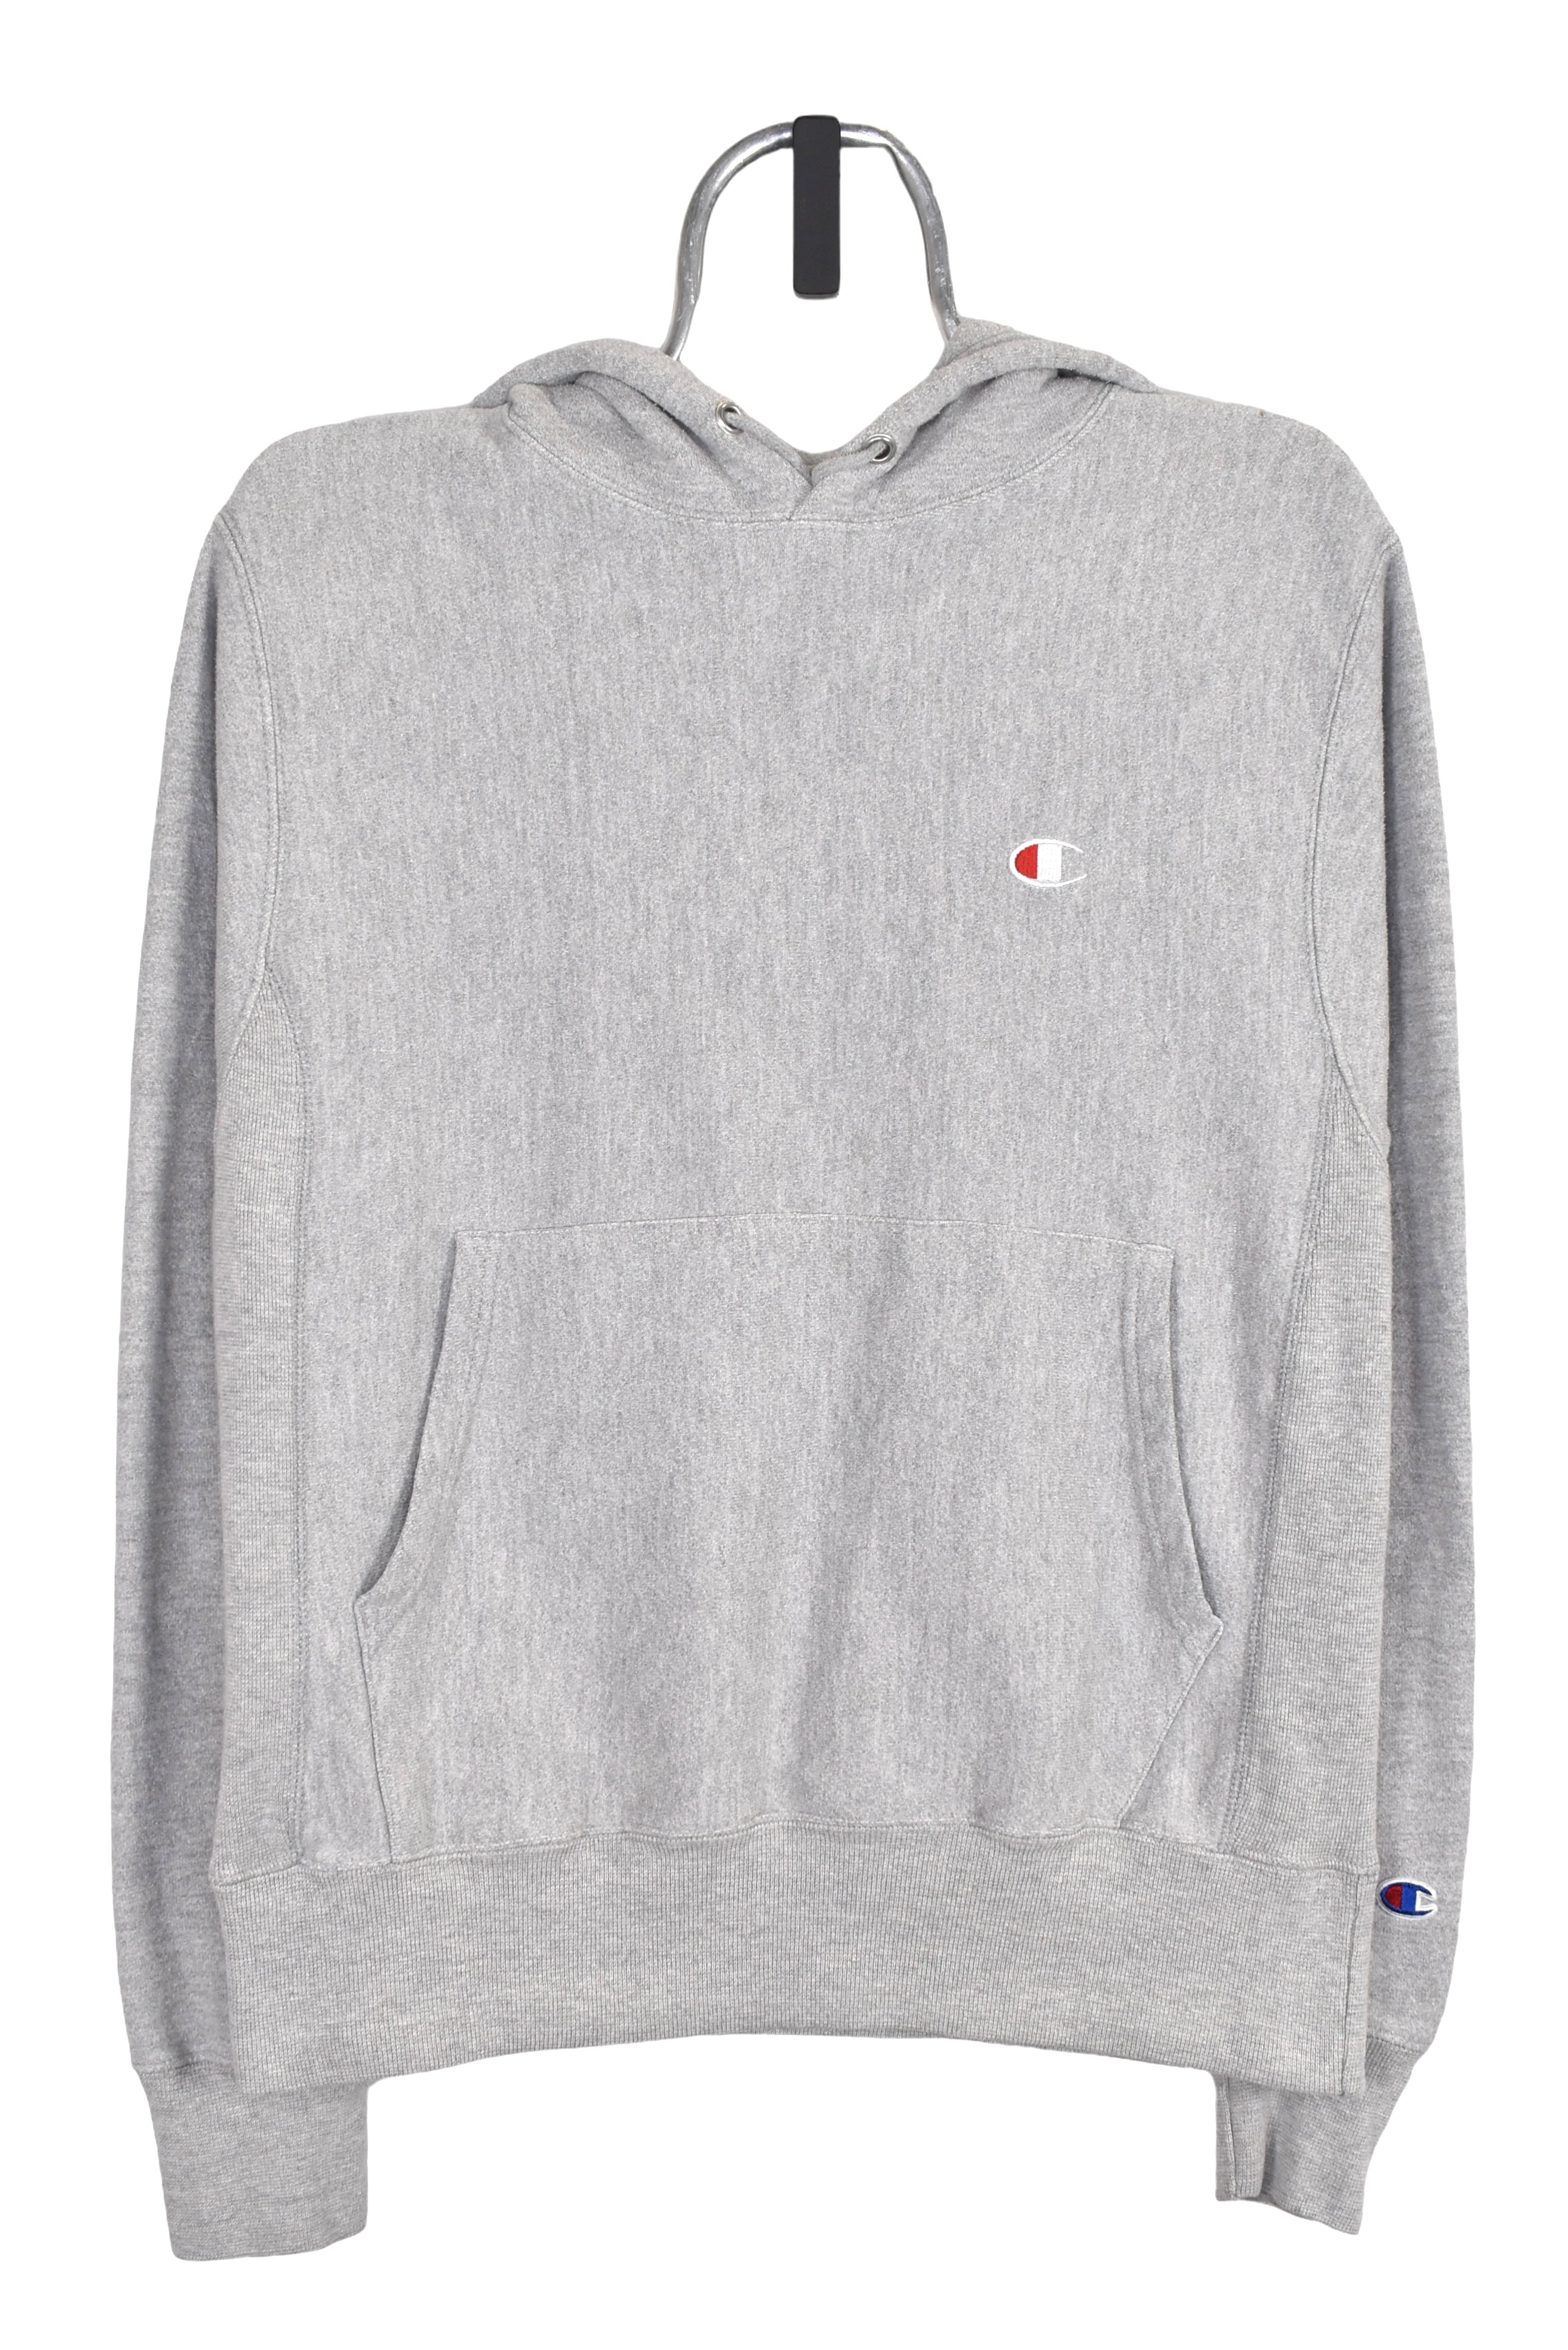 Modern Champion hoodie (S), grey embroidered sweatshirt